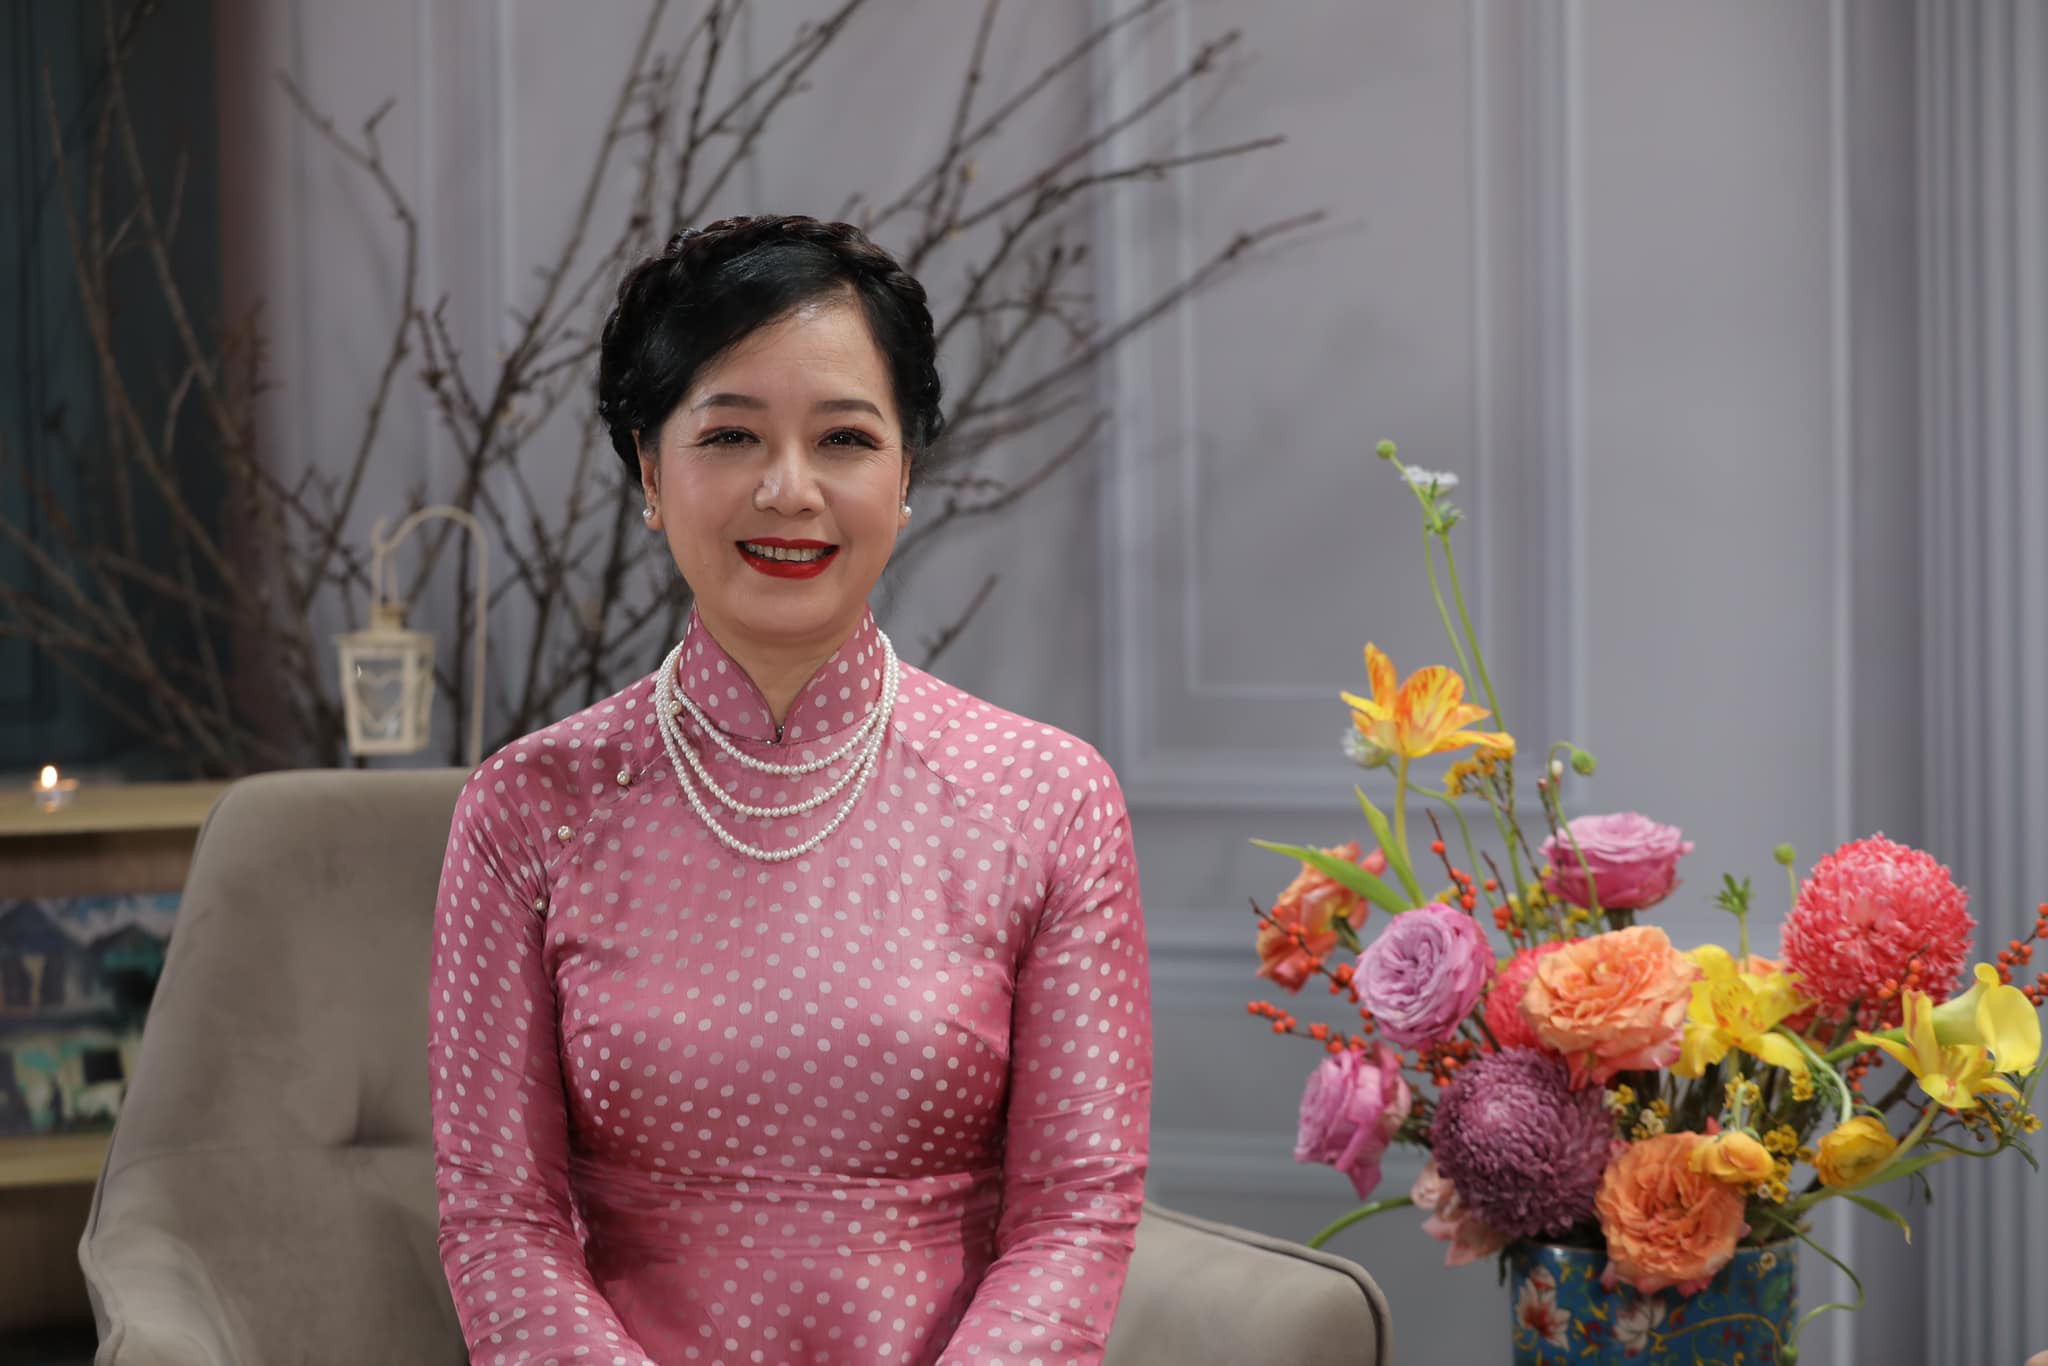 NSƯT Chiều Xuân tiết lộ bí quyết hôn nhân gần 40 năm vẫn ngọt ngào